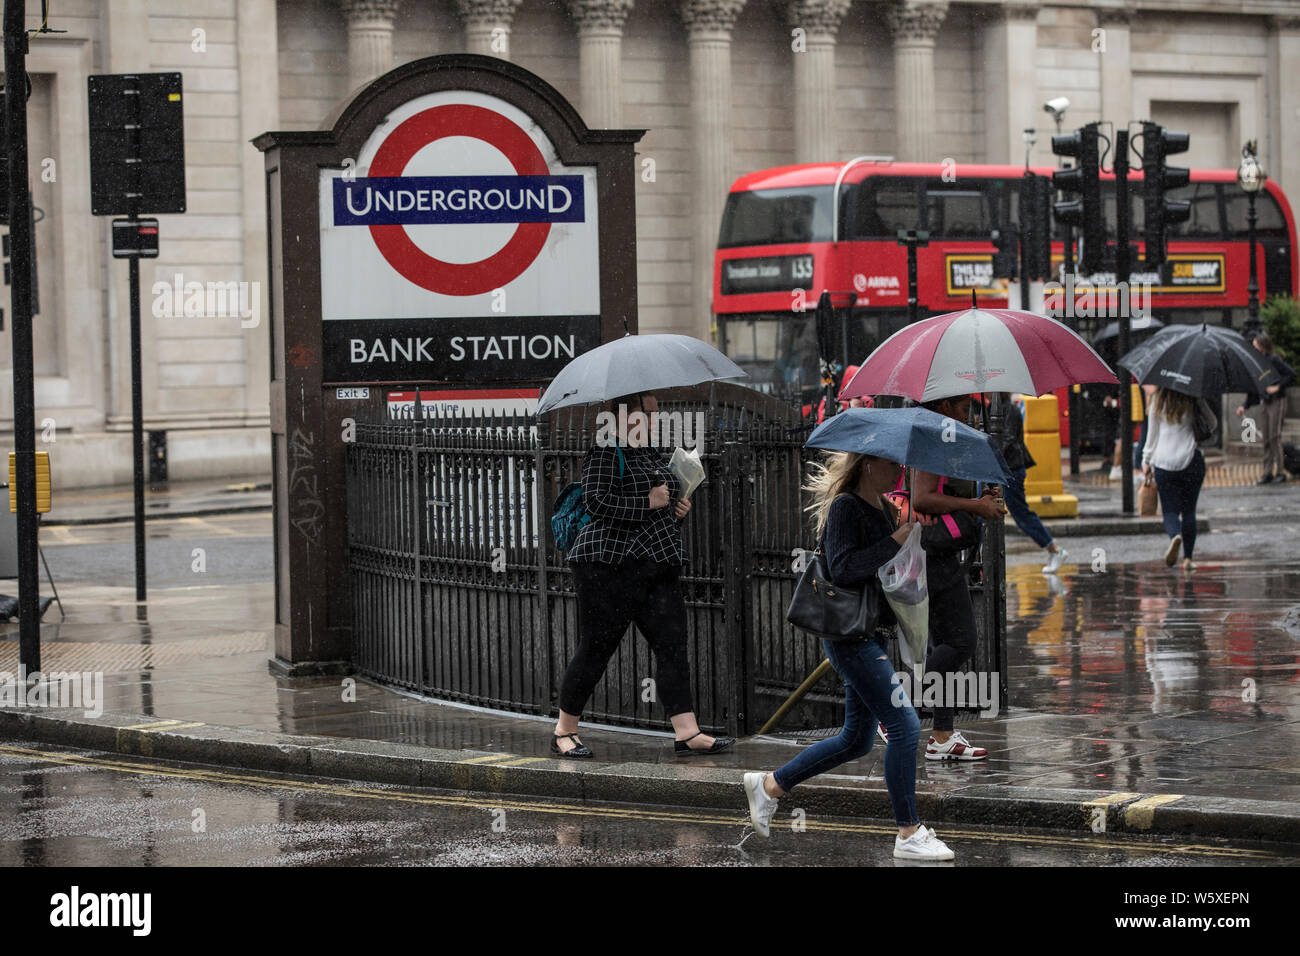 Les touristes avec des parasols à l'abri d'une averse de pluie lourde à pied de la station de métro Bank dans la ville de Londres, Angleterre, Royaume-Uni Banque D'Images